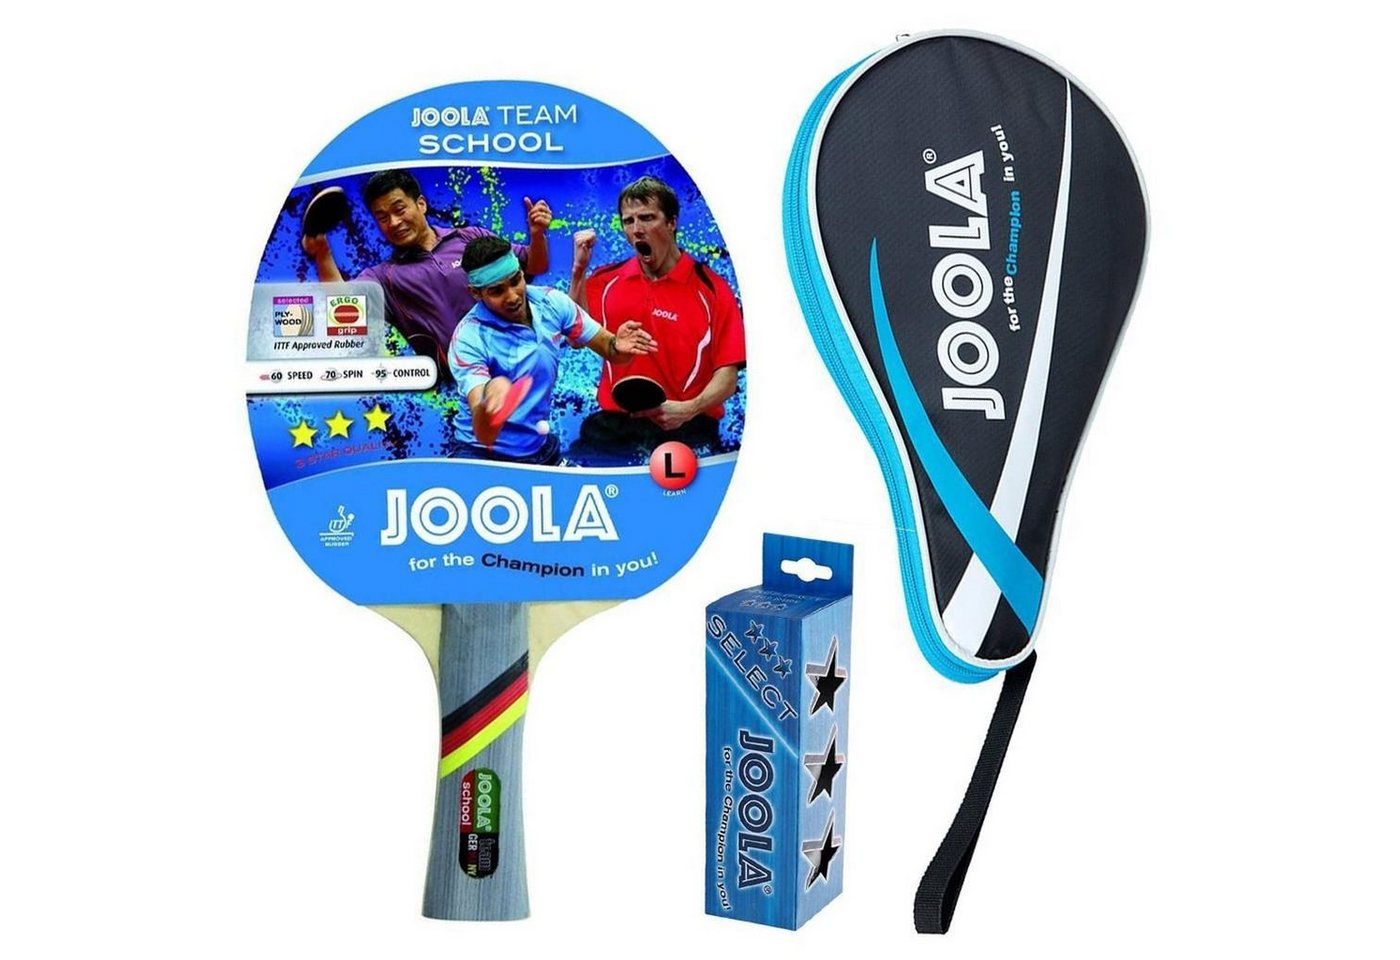 Joola Tischtennisschläger Team School + Pocket blau + 3 Bälle, Tischtennis Schläger Set Tischtennisset Table Tennis Bat Racket von Joola